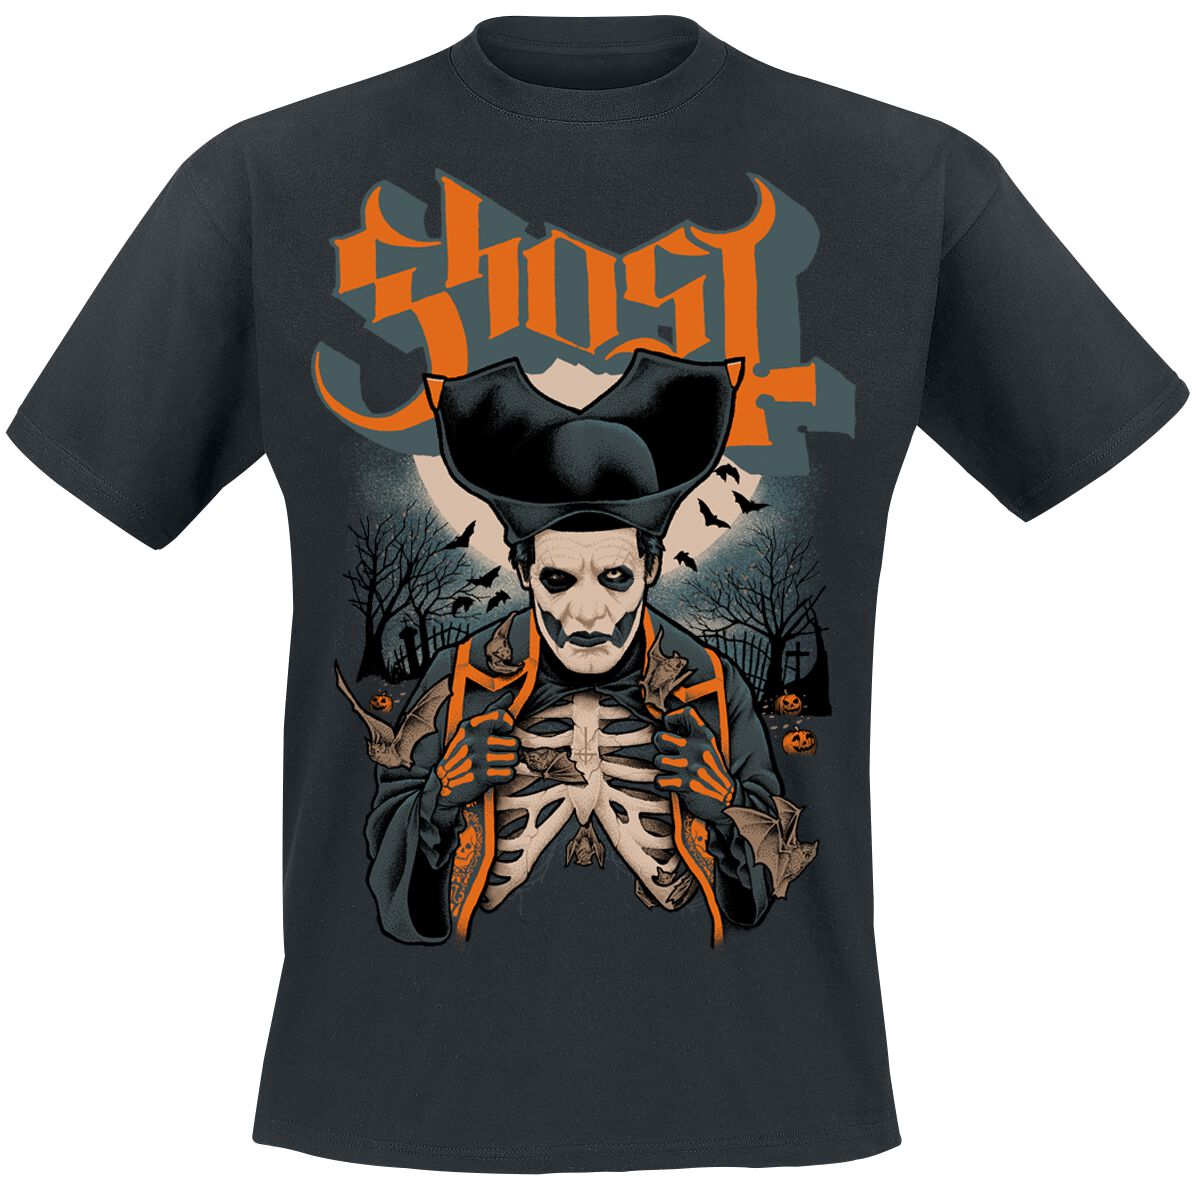 Ghost T-Shirt - Ribs & Bats - S bis 4XL - für Männer - Größe XXL - schwarz  - Lizenziertes Merchandise!